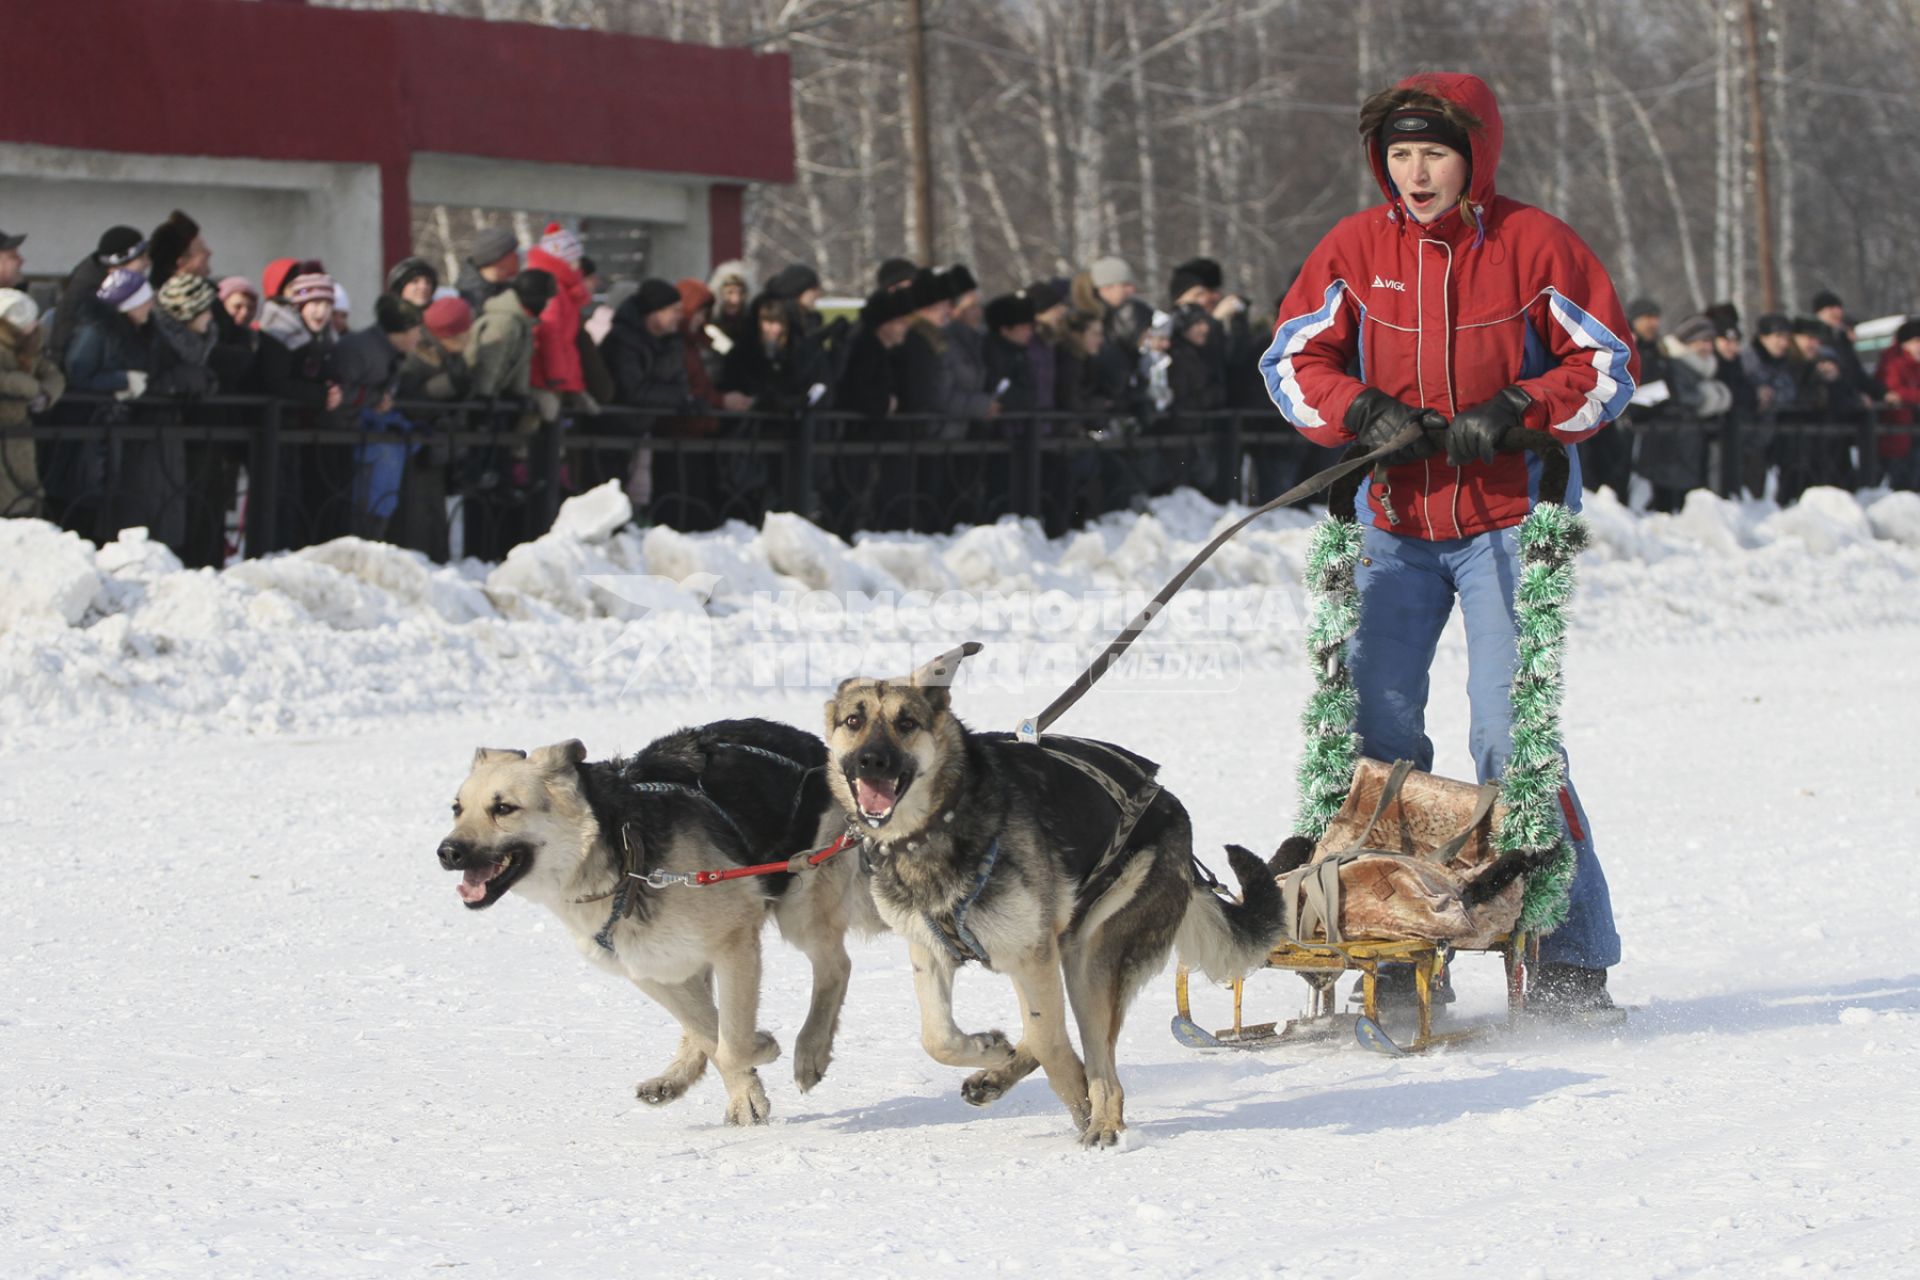 Гонки на собачьих упряжках в Барнауле. На снимке: женщина на санях с упряжкой из собак породы овчарка.